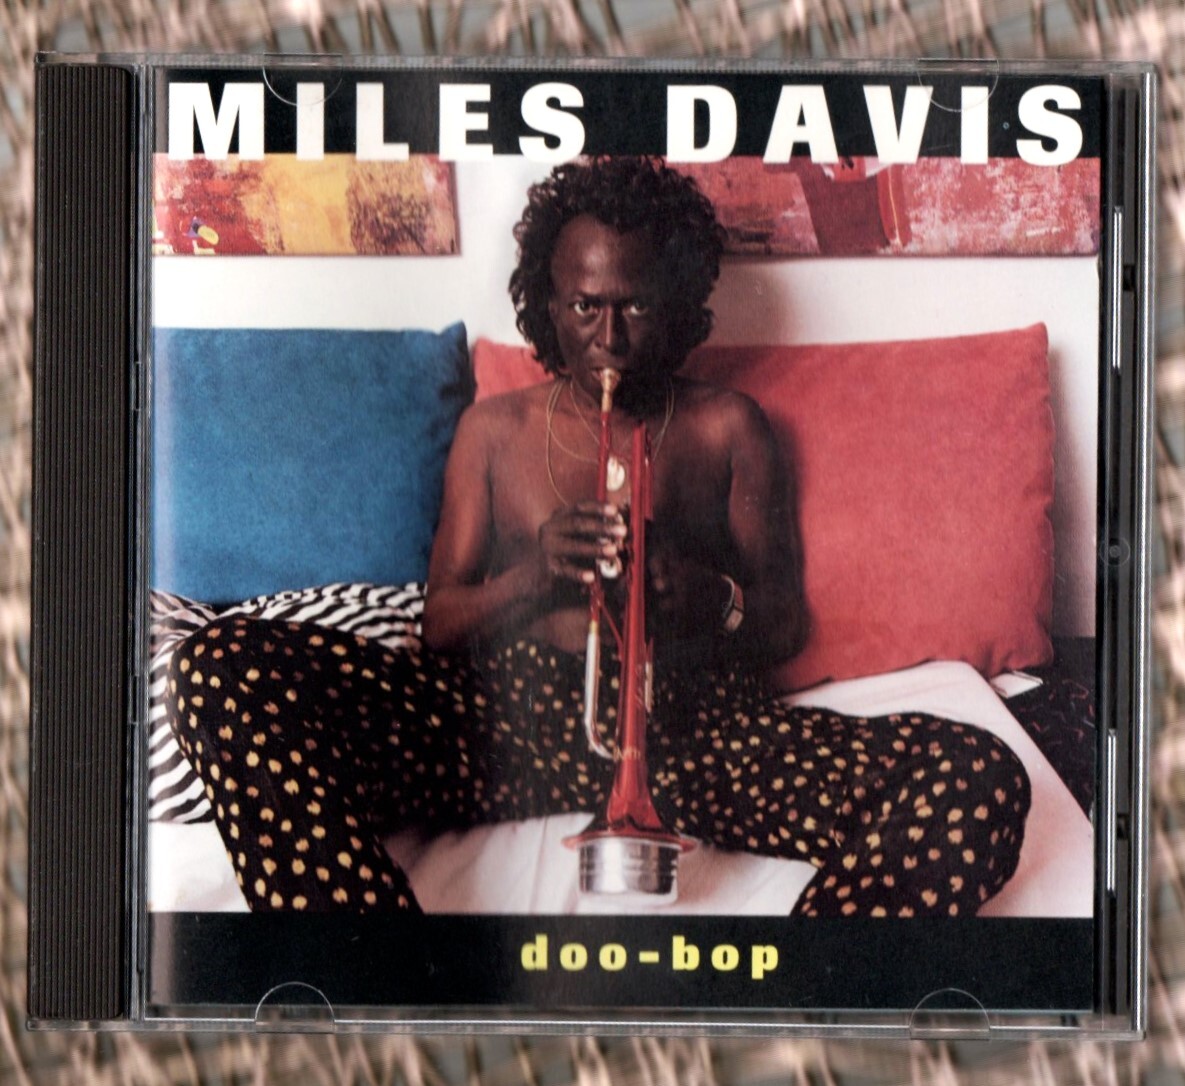 ∇ 美品 9曲入 輸入盤 Jazz CD/マイルス デイヴィス Miles Davis/ドゥー バップ Doo-Bop _※プラケースは交換済みです。